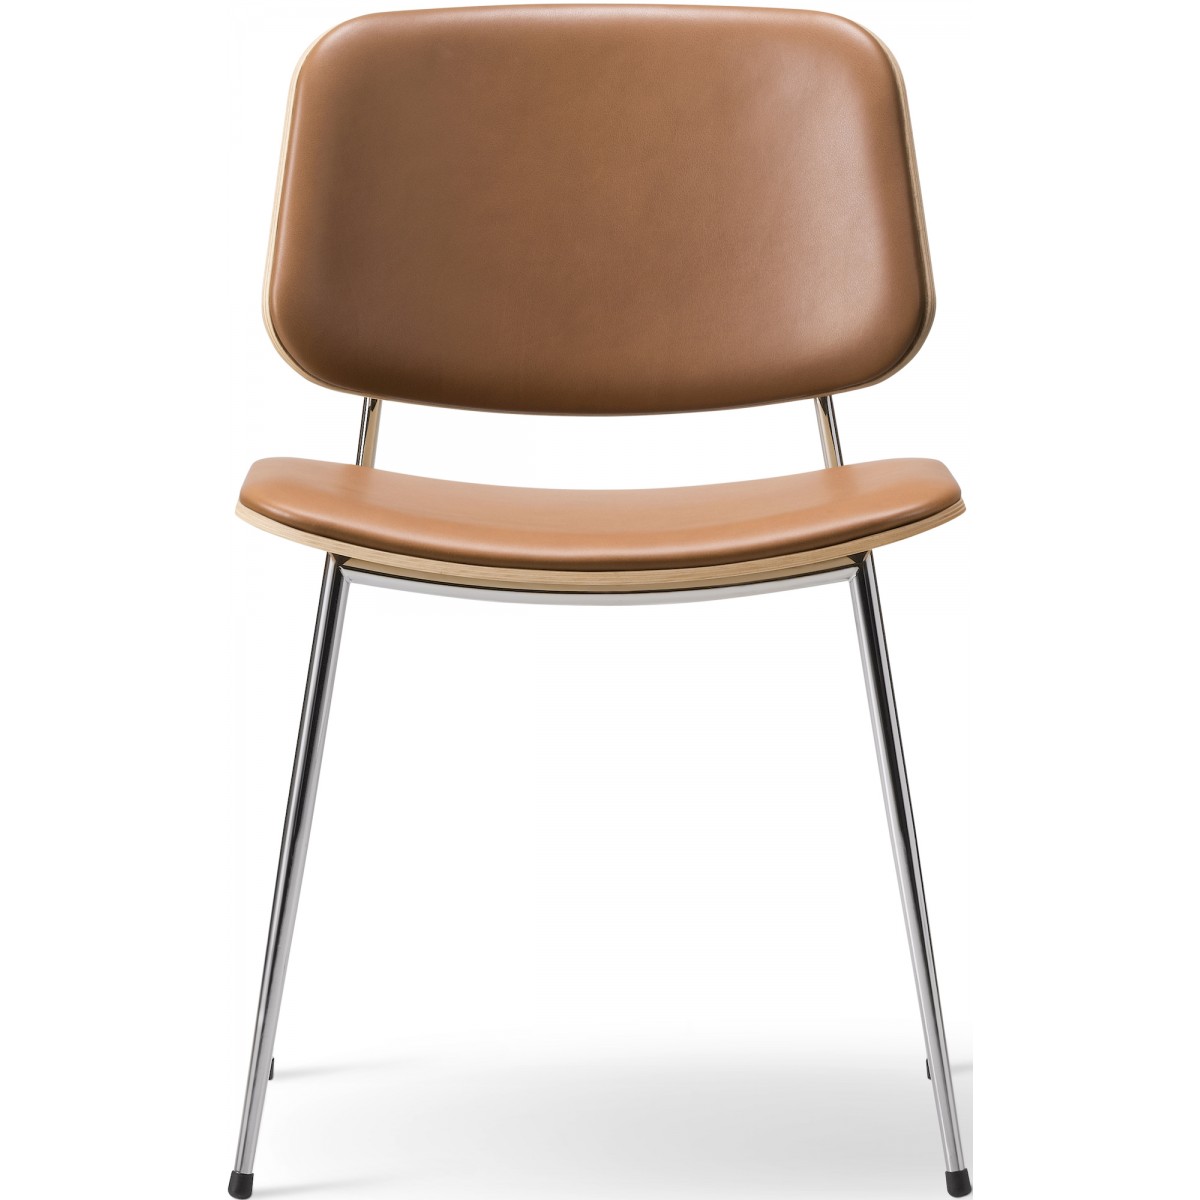 ÉPUISÉ Assise et dossier rembourrés – cuir Max 95 + chêne vernis / chrome – chaise Søborg 3062 (métal)